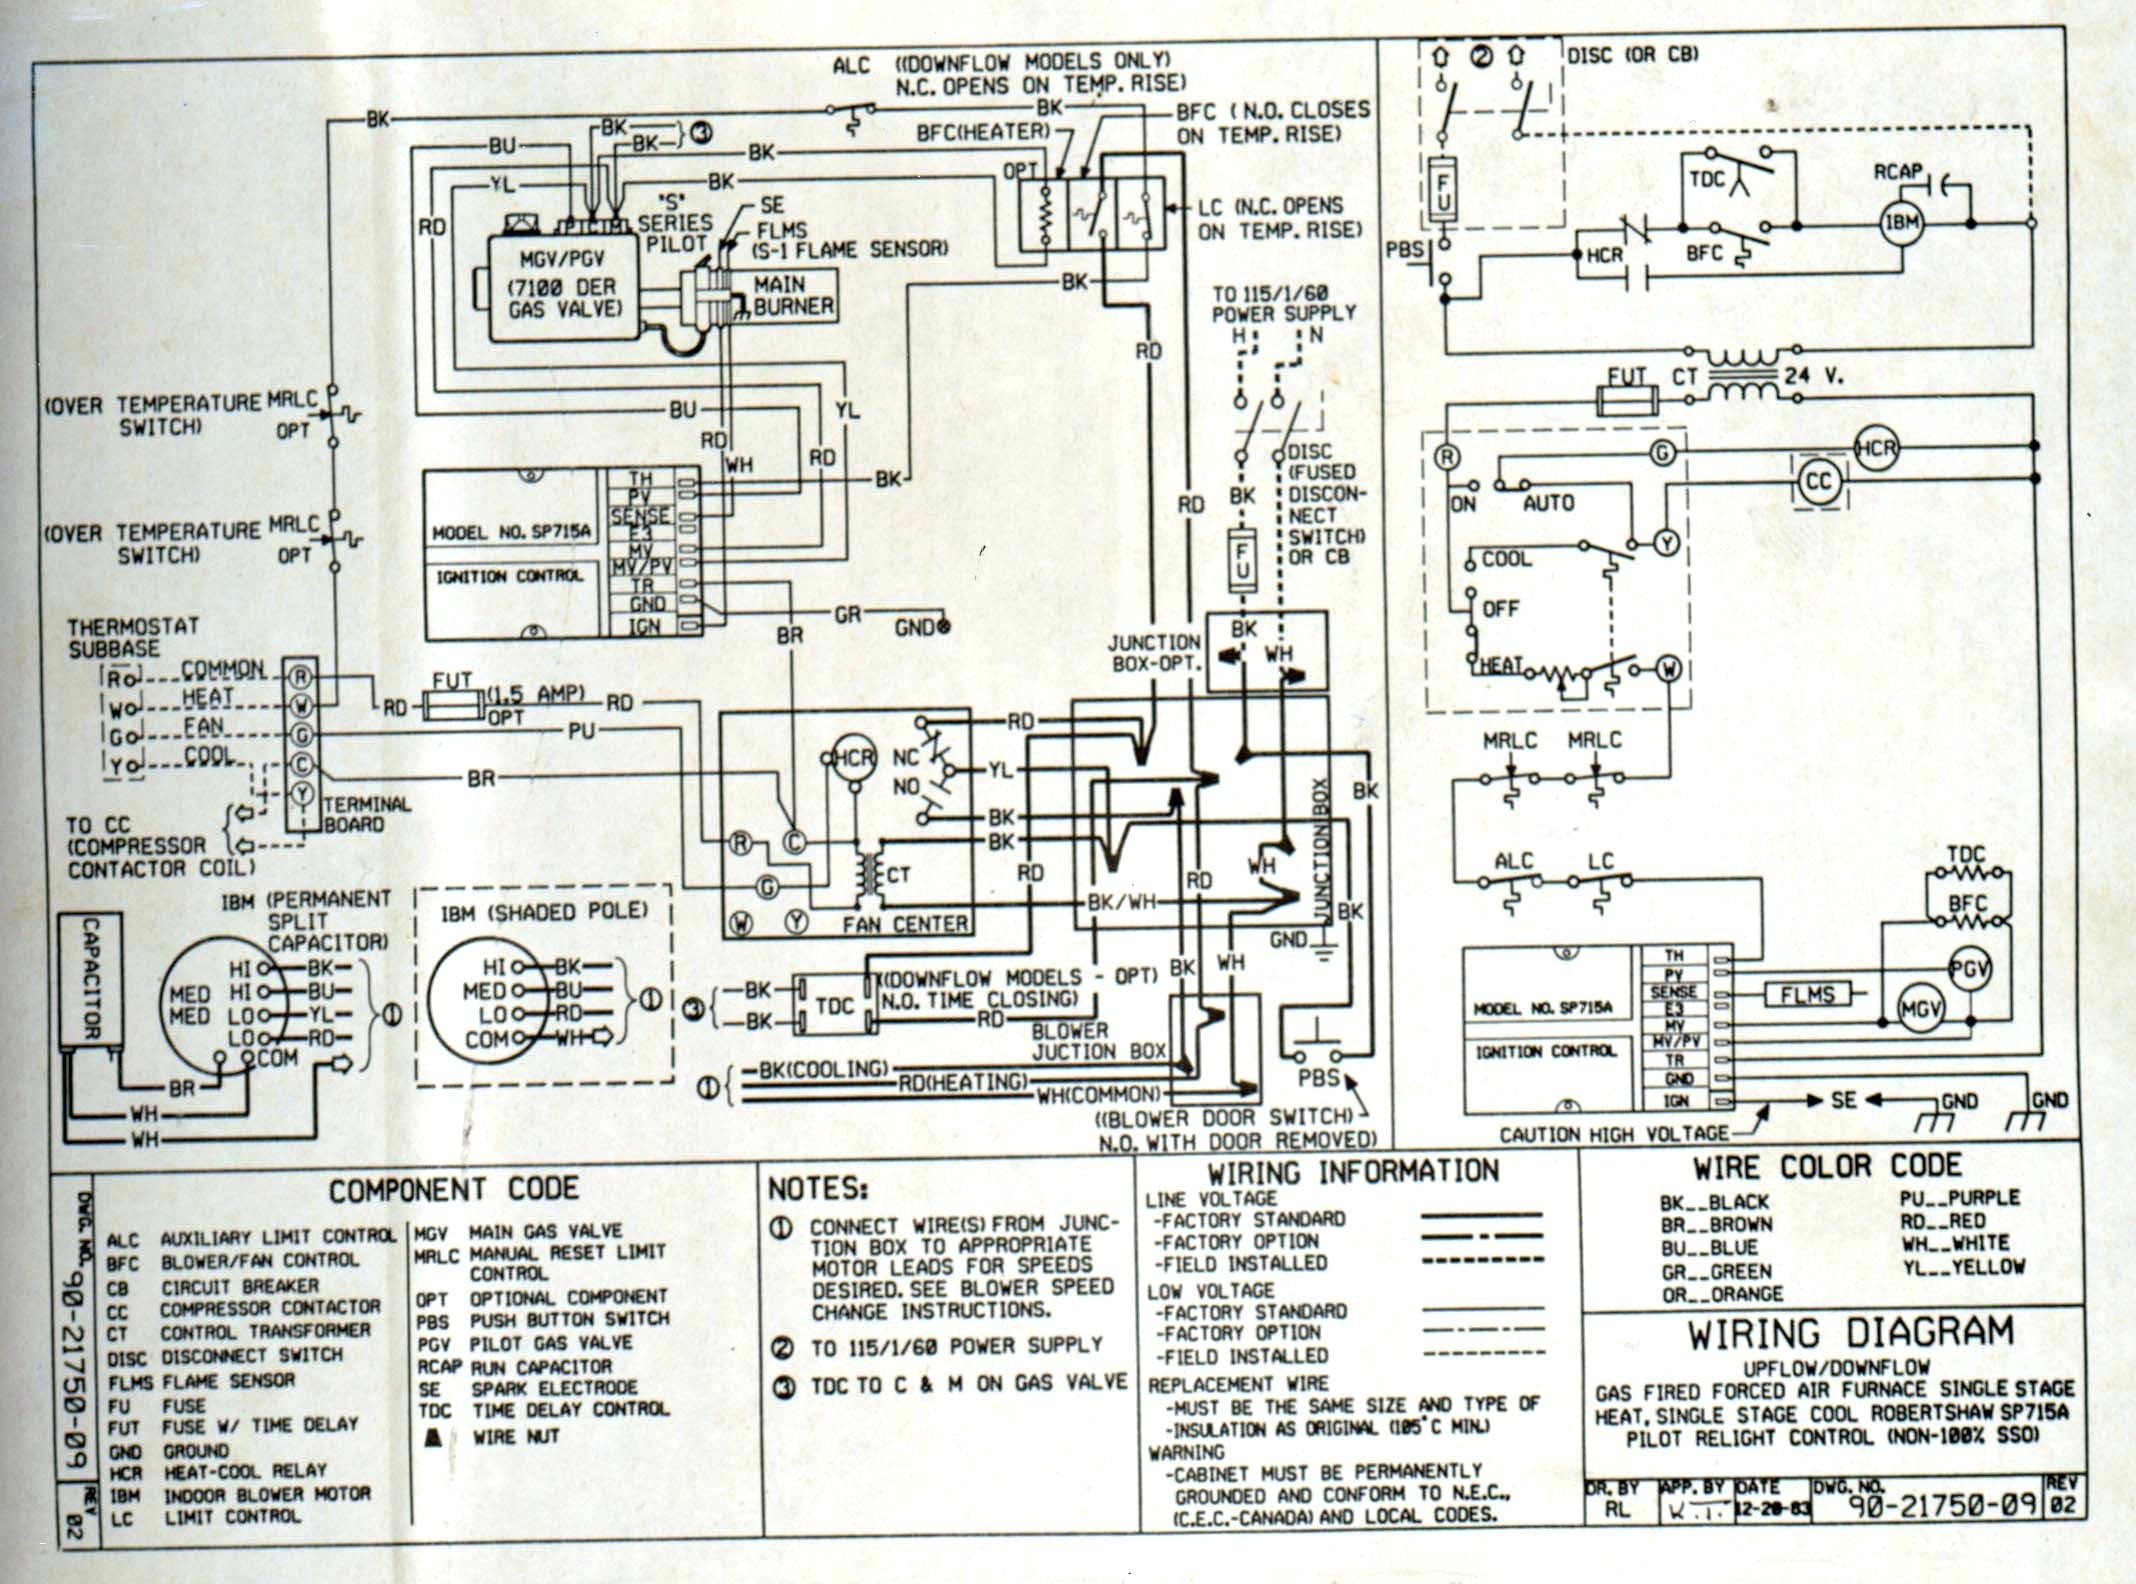 ruud air handler wiring diagram - Wiring Diagram